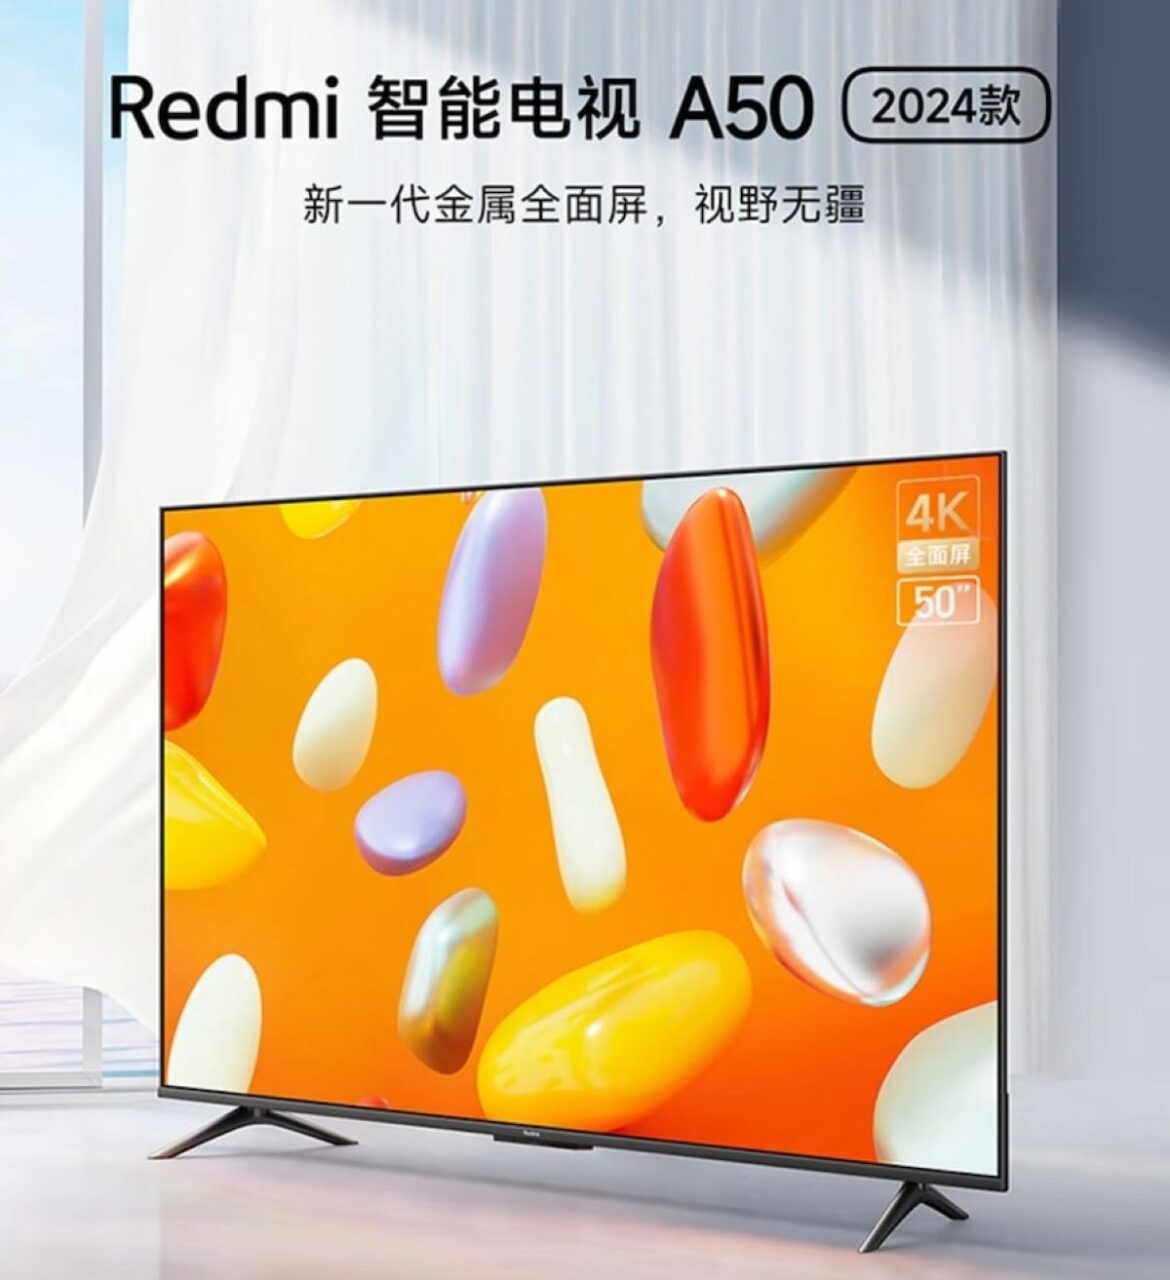 Redmi TV A50 2024 телевизор